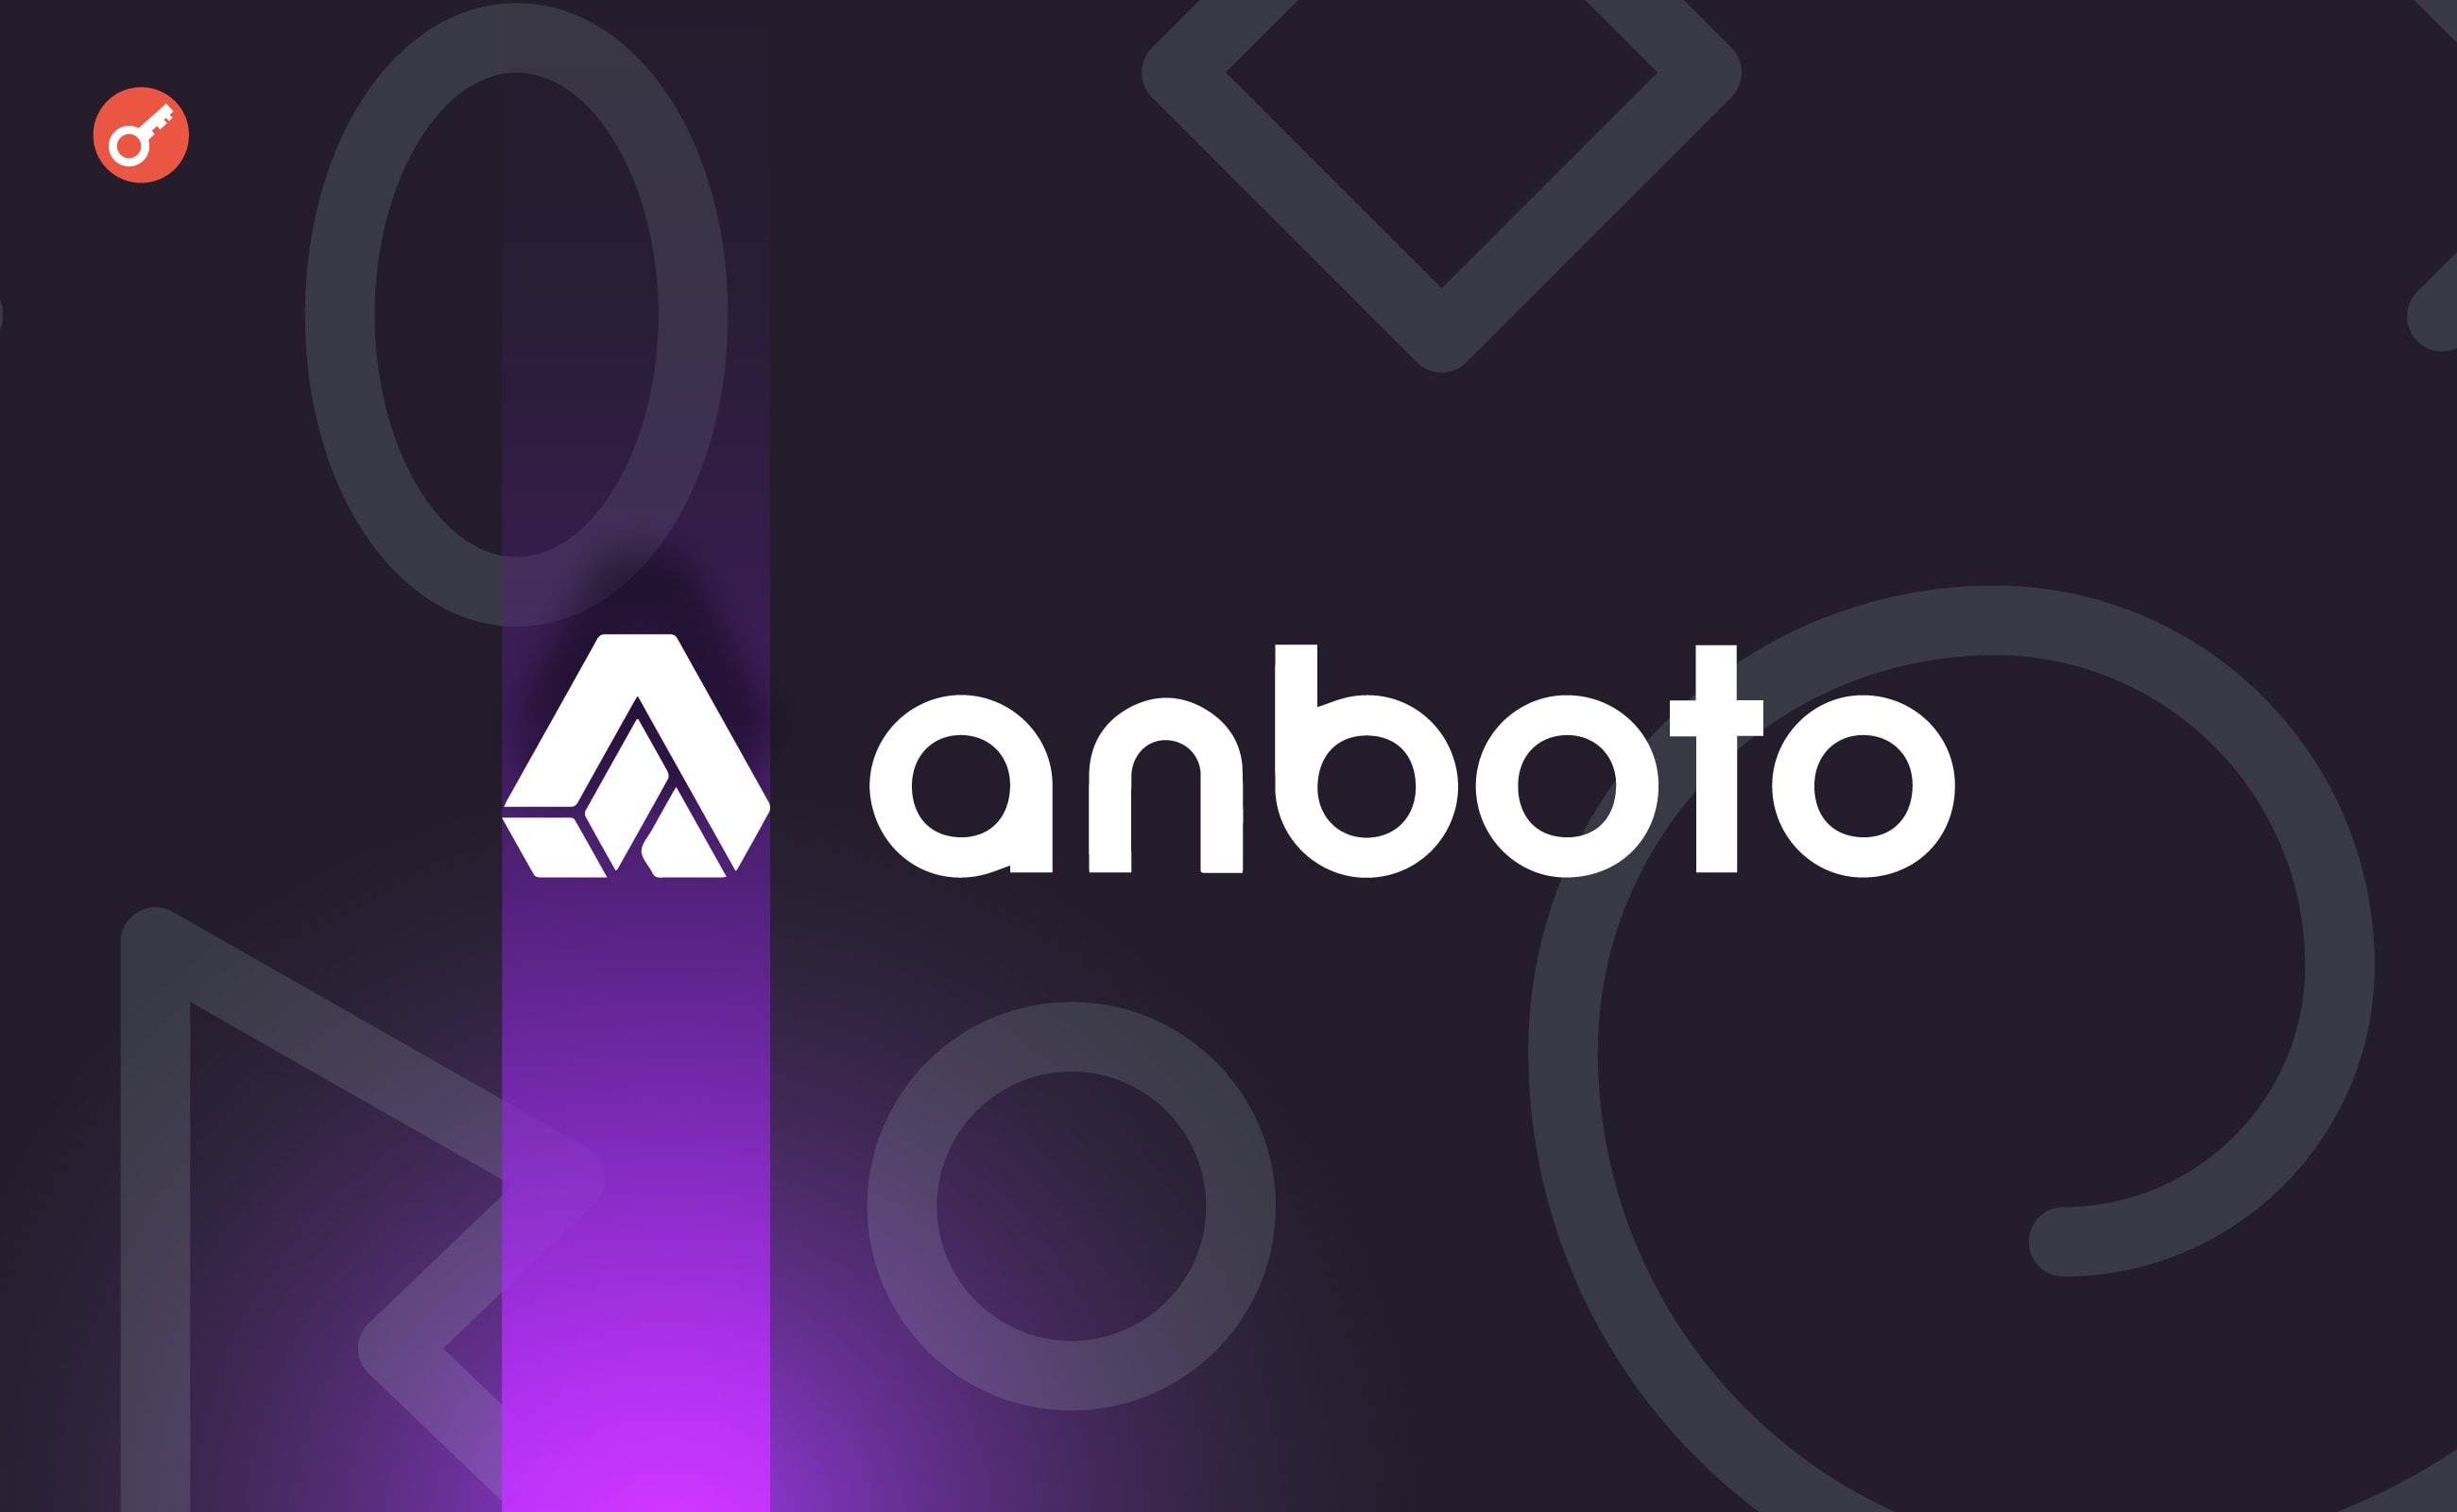 Anboto Labs залучила $3 млн для розвитку торгової платформи. Головний колаж новини.